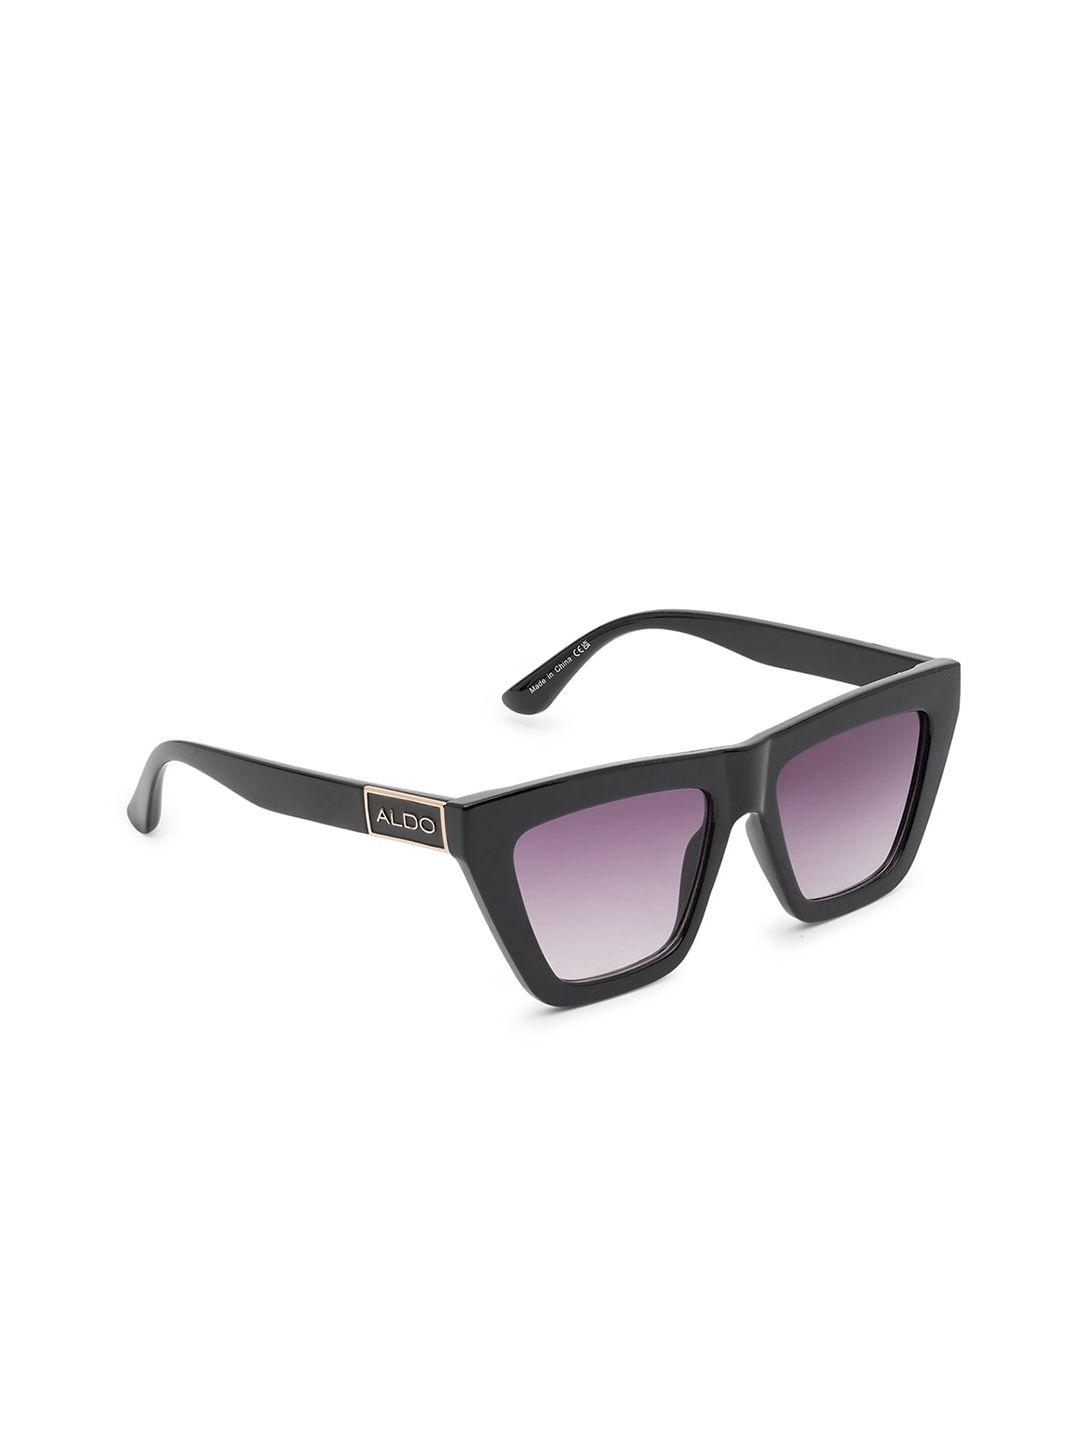 aldo-women-square-sunglasses-galaleveth970